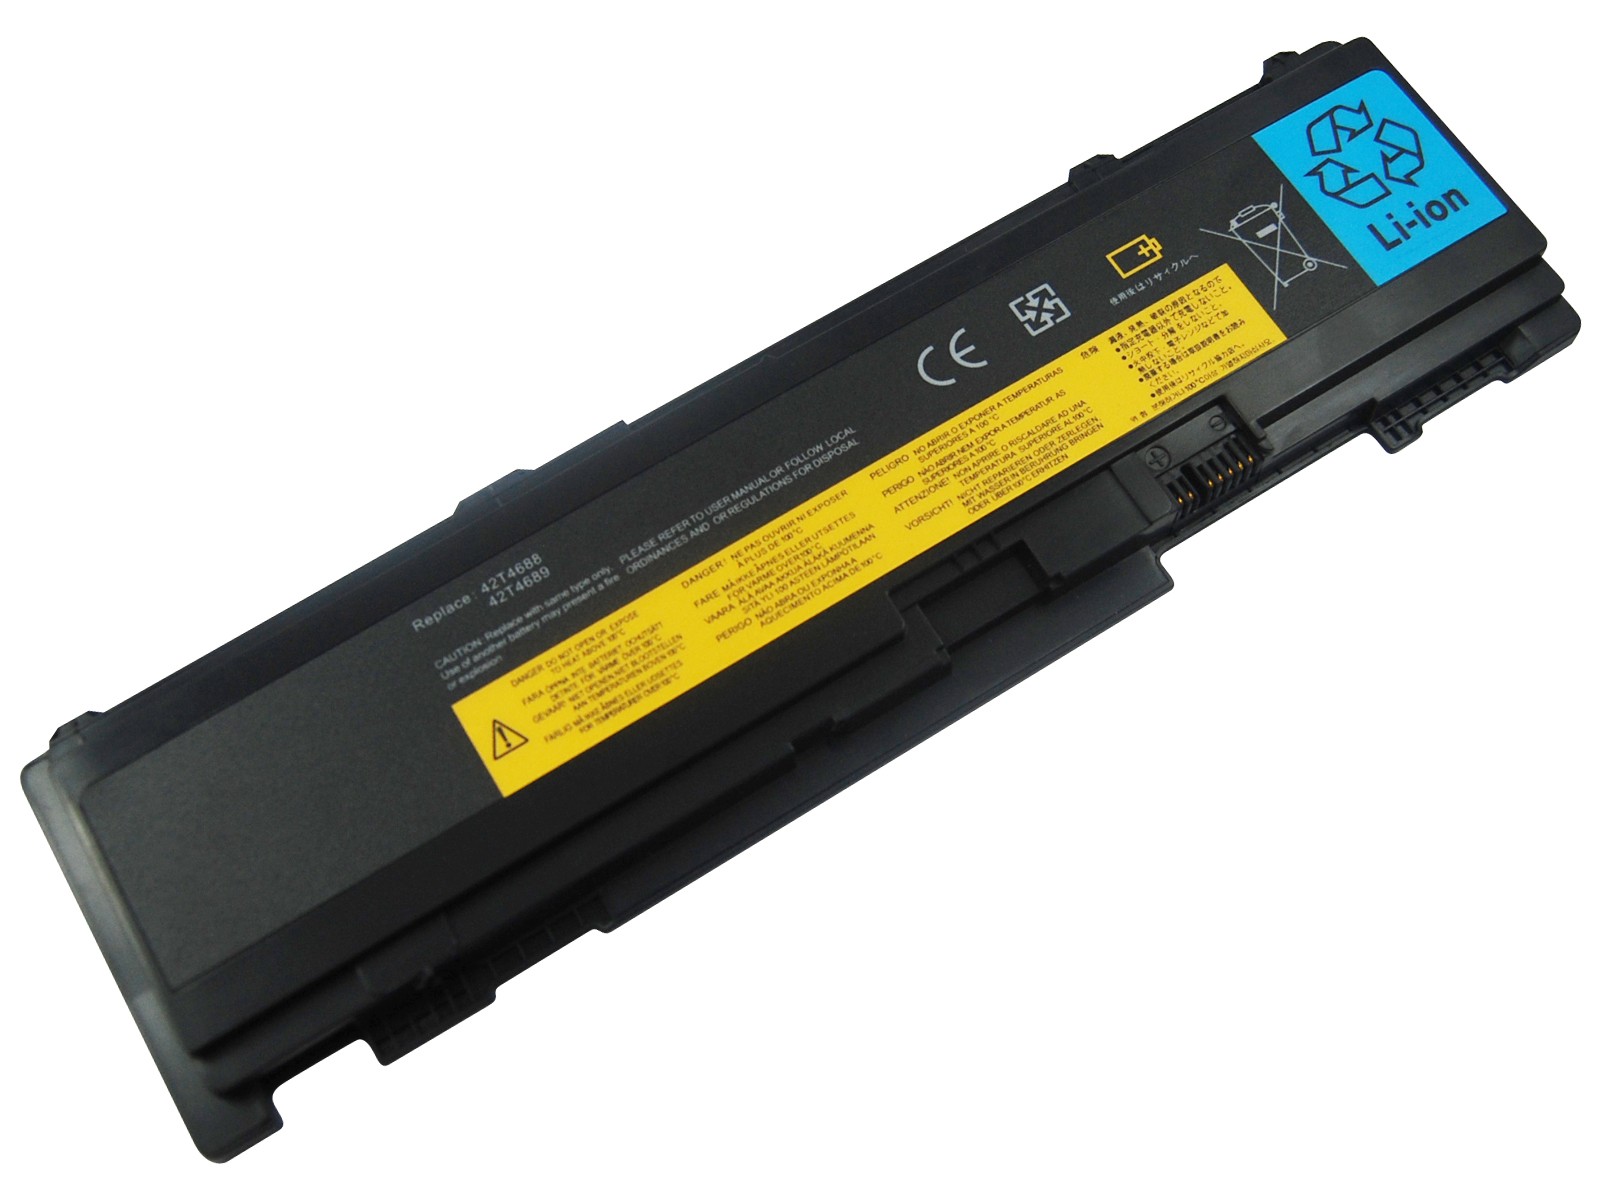 Batteri til Lenovo ThinkPad T400s, T410s og T410si seriene